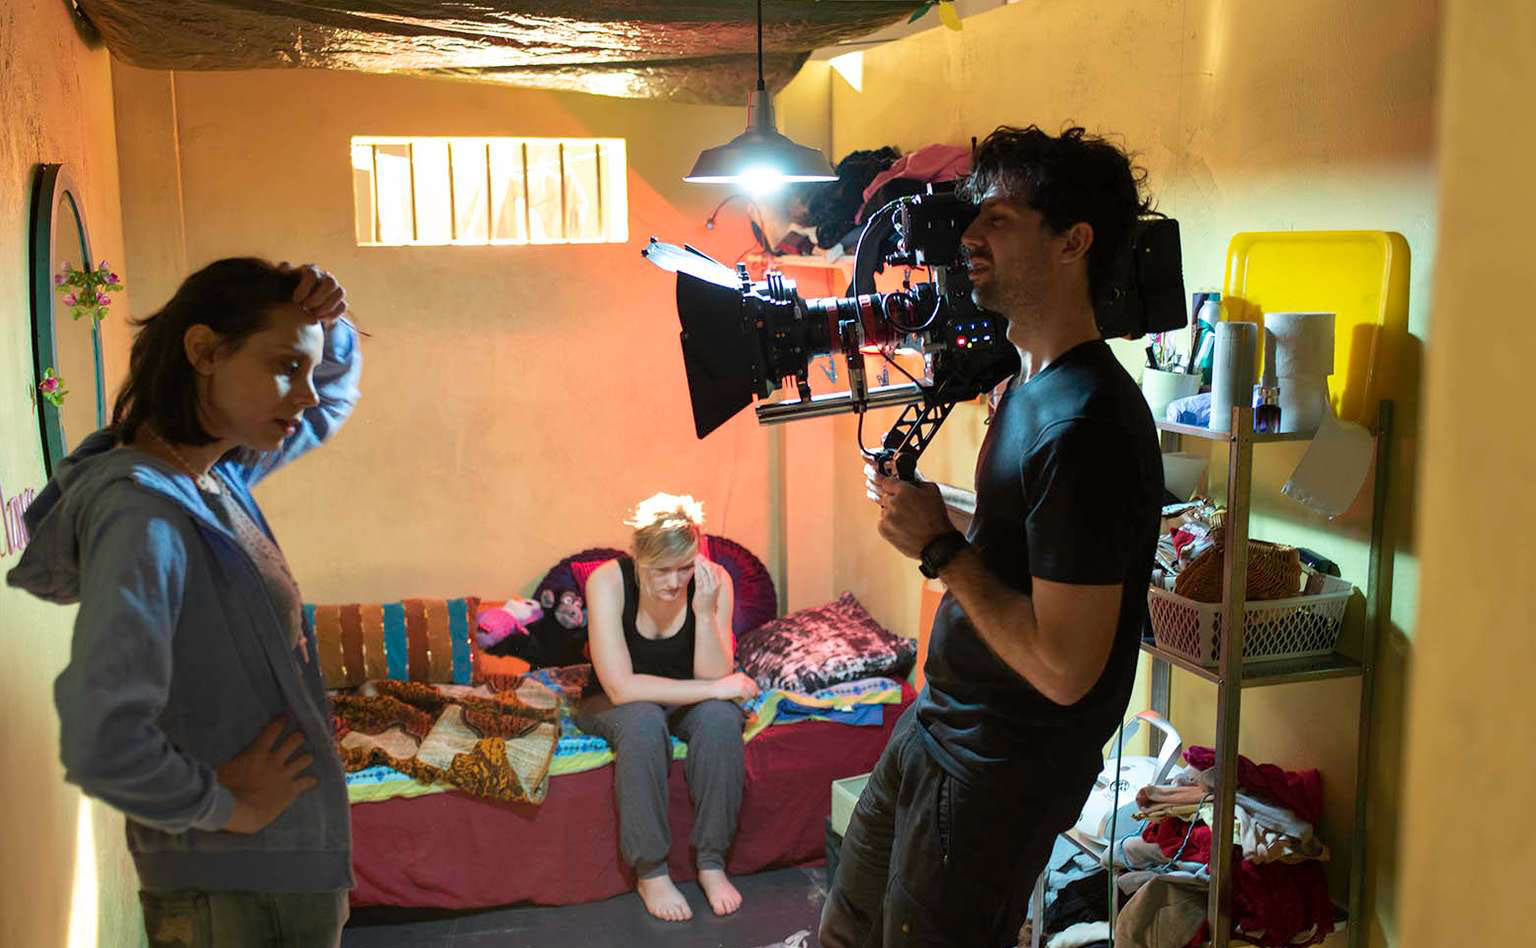 Innspilling av filmscene i lite kjellerrom; kvinne foran kamera holdt av mann.